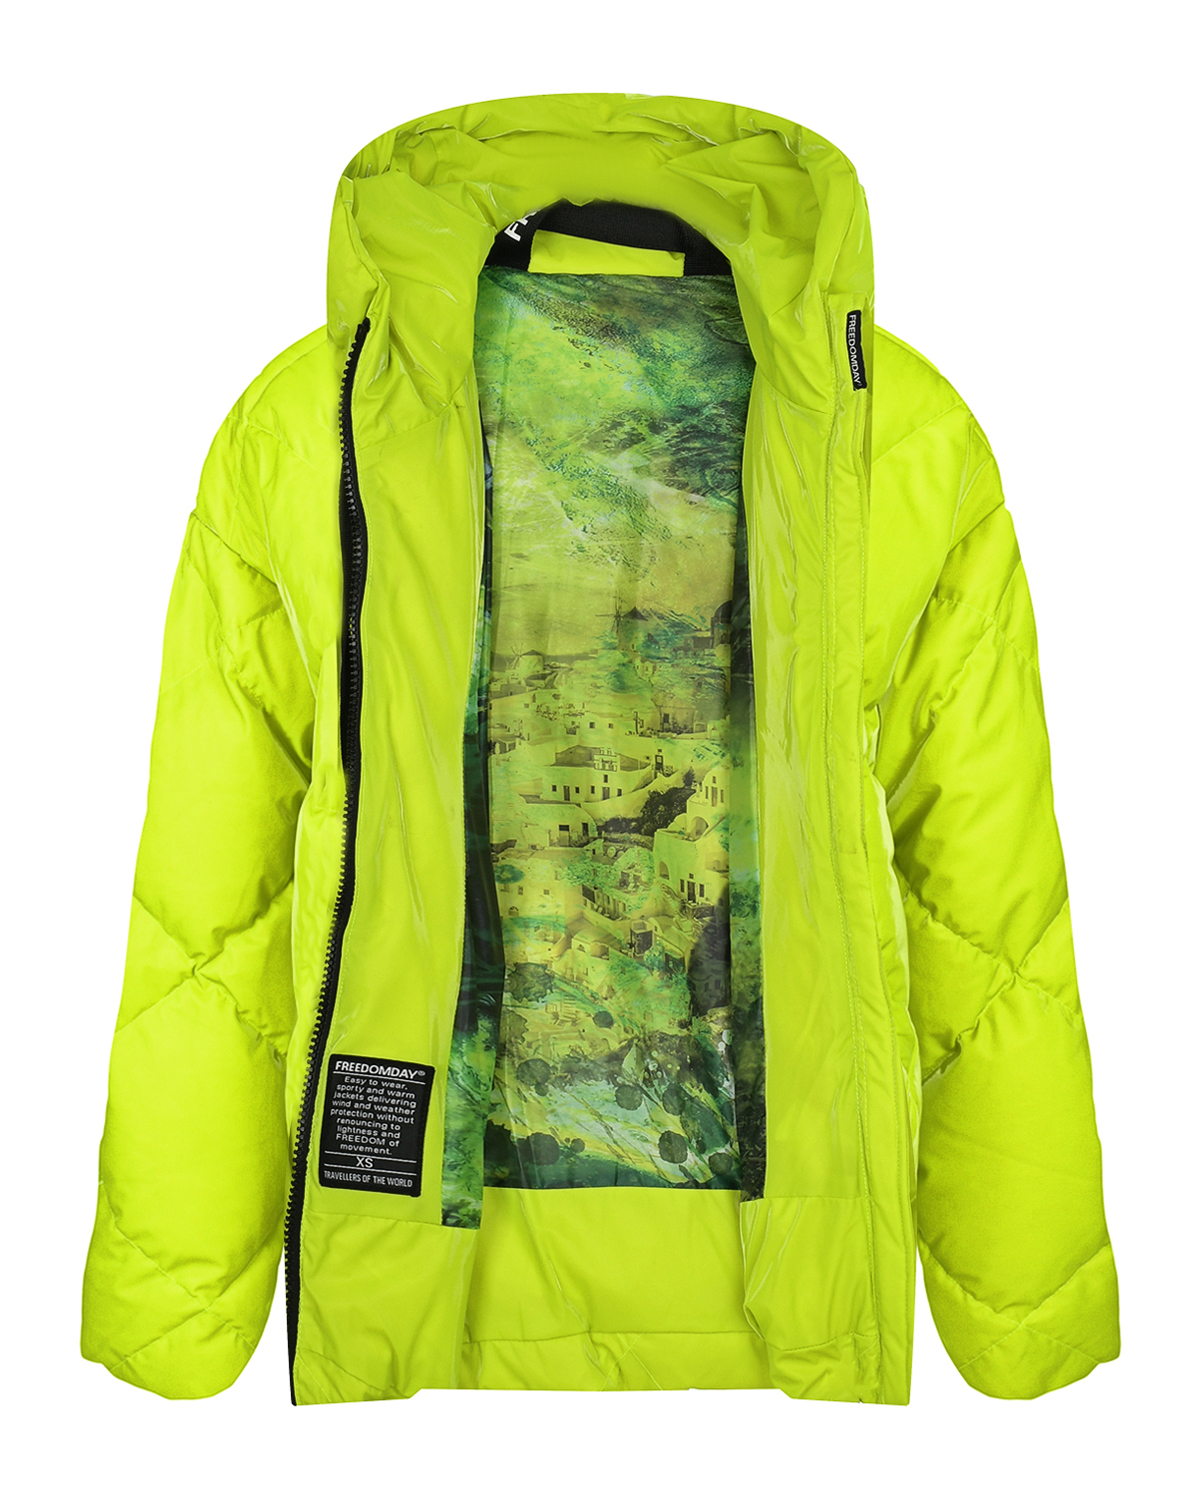 Салатовая куртка со стеганой отделкой Freedomday, размер 38, цвет салатовый - фото 3